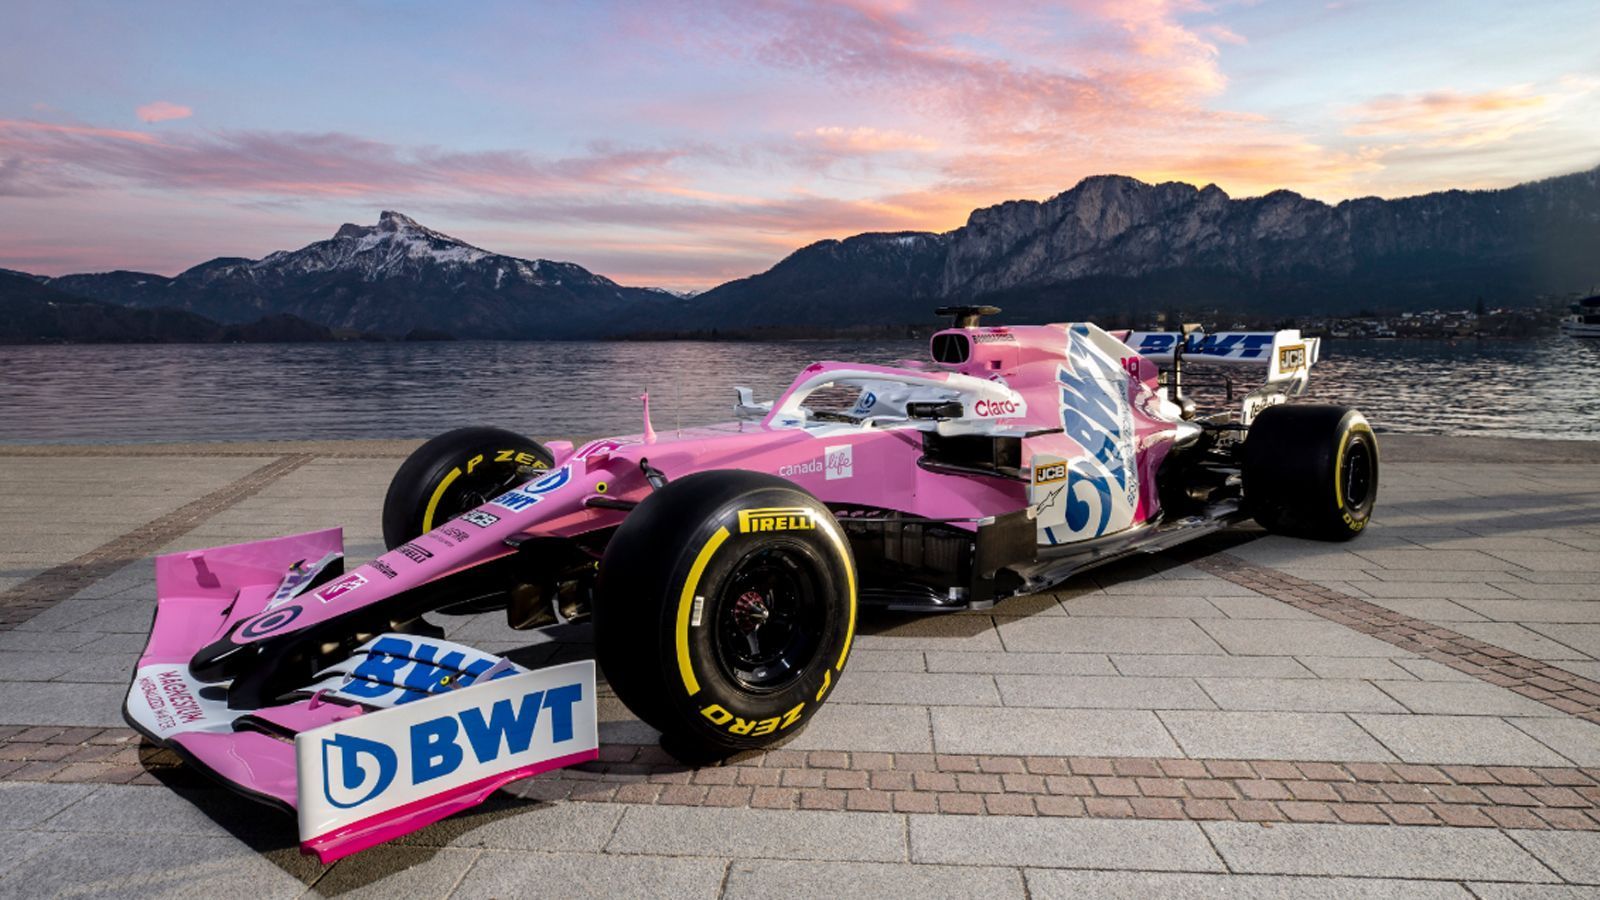 
                <strong>BWT Racing Point RP20</strong><br>
                Mit seinem rosa Boliden war BWT Racing Point schon in den vergangenen Jahren ein Farbtupfer der Formel 1. Und der neue RP20 ist nun sogar so rosa wie nie: Auch die zuletzt blauen Elemente am Heck des Fahrzeuges sind nun komplett rosa. Einzig das Logo des Namenssponsors ist noch blau.
              